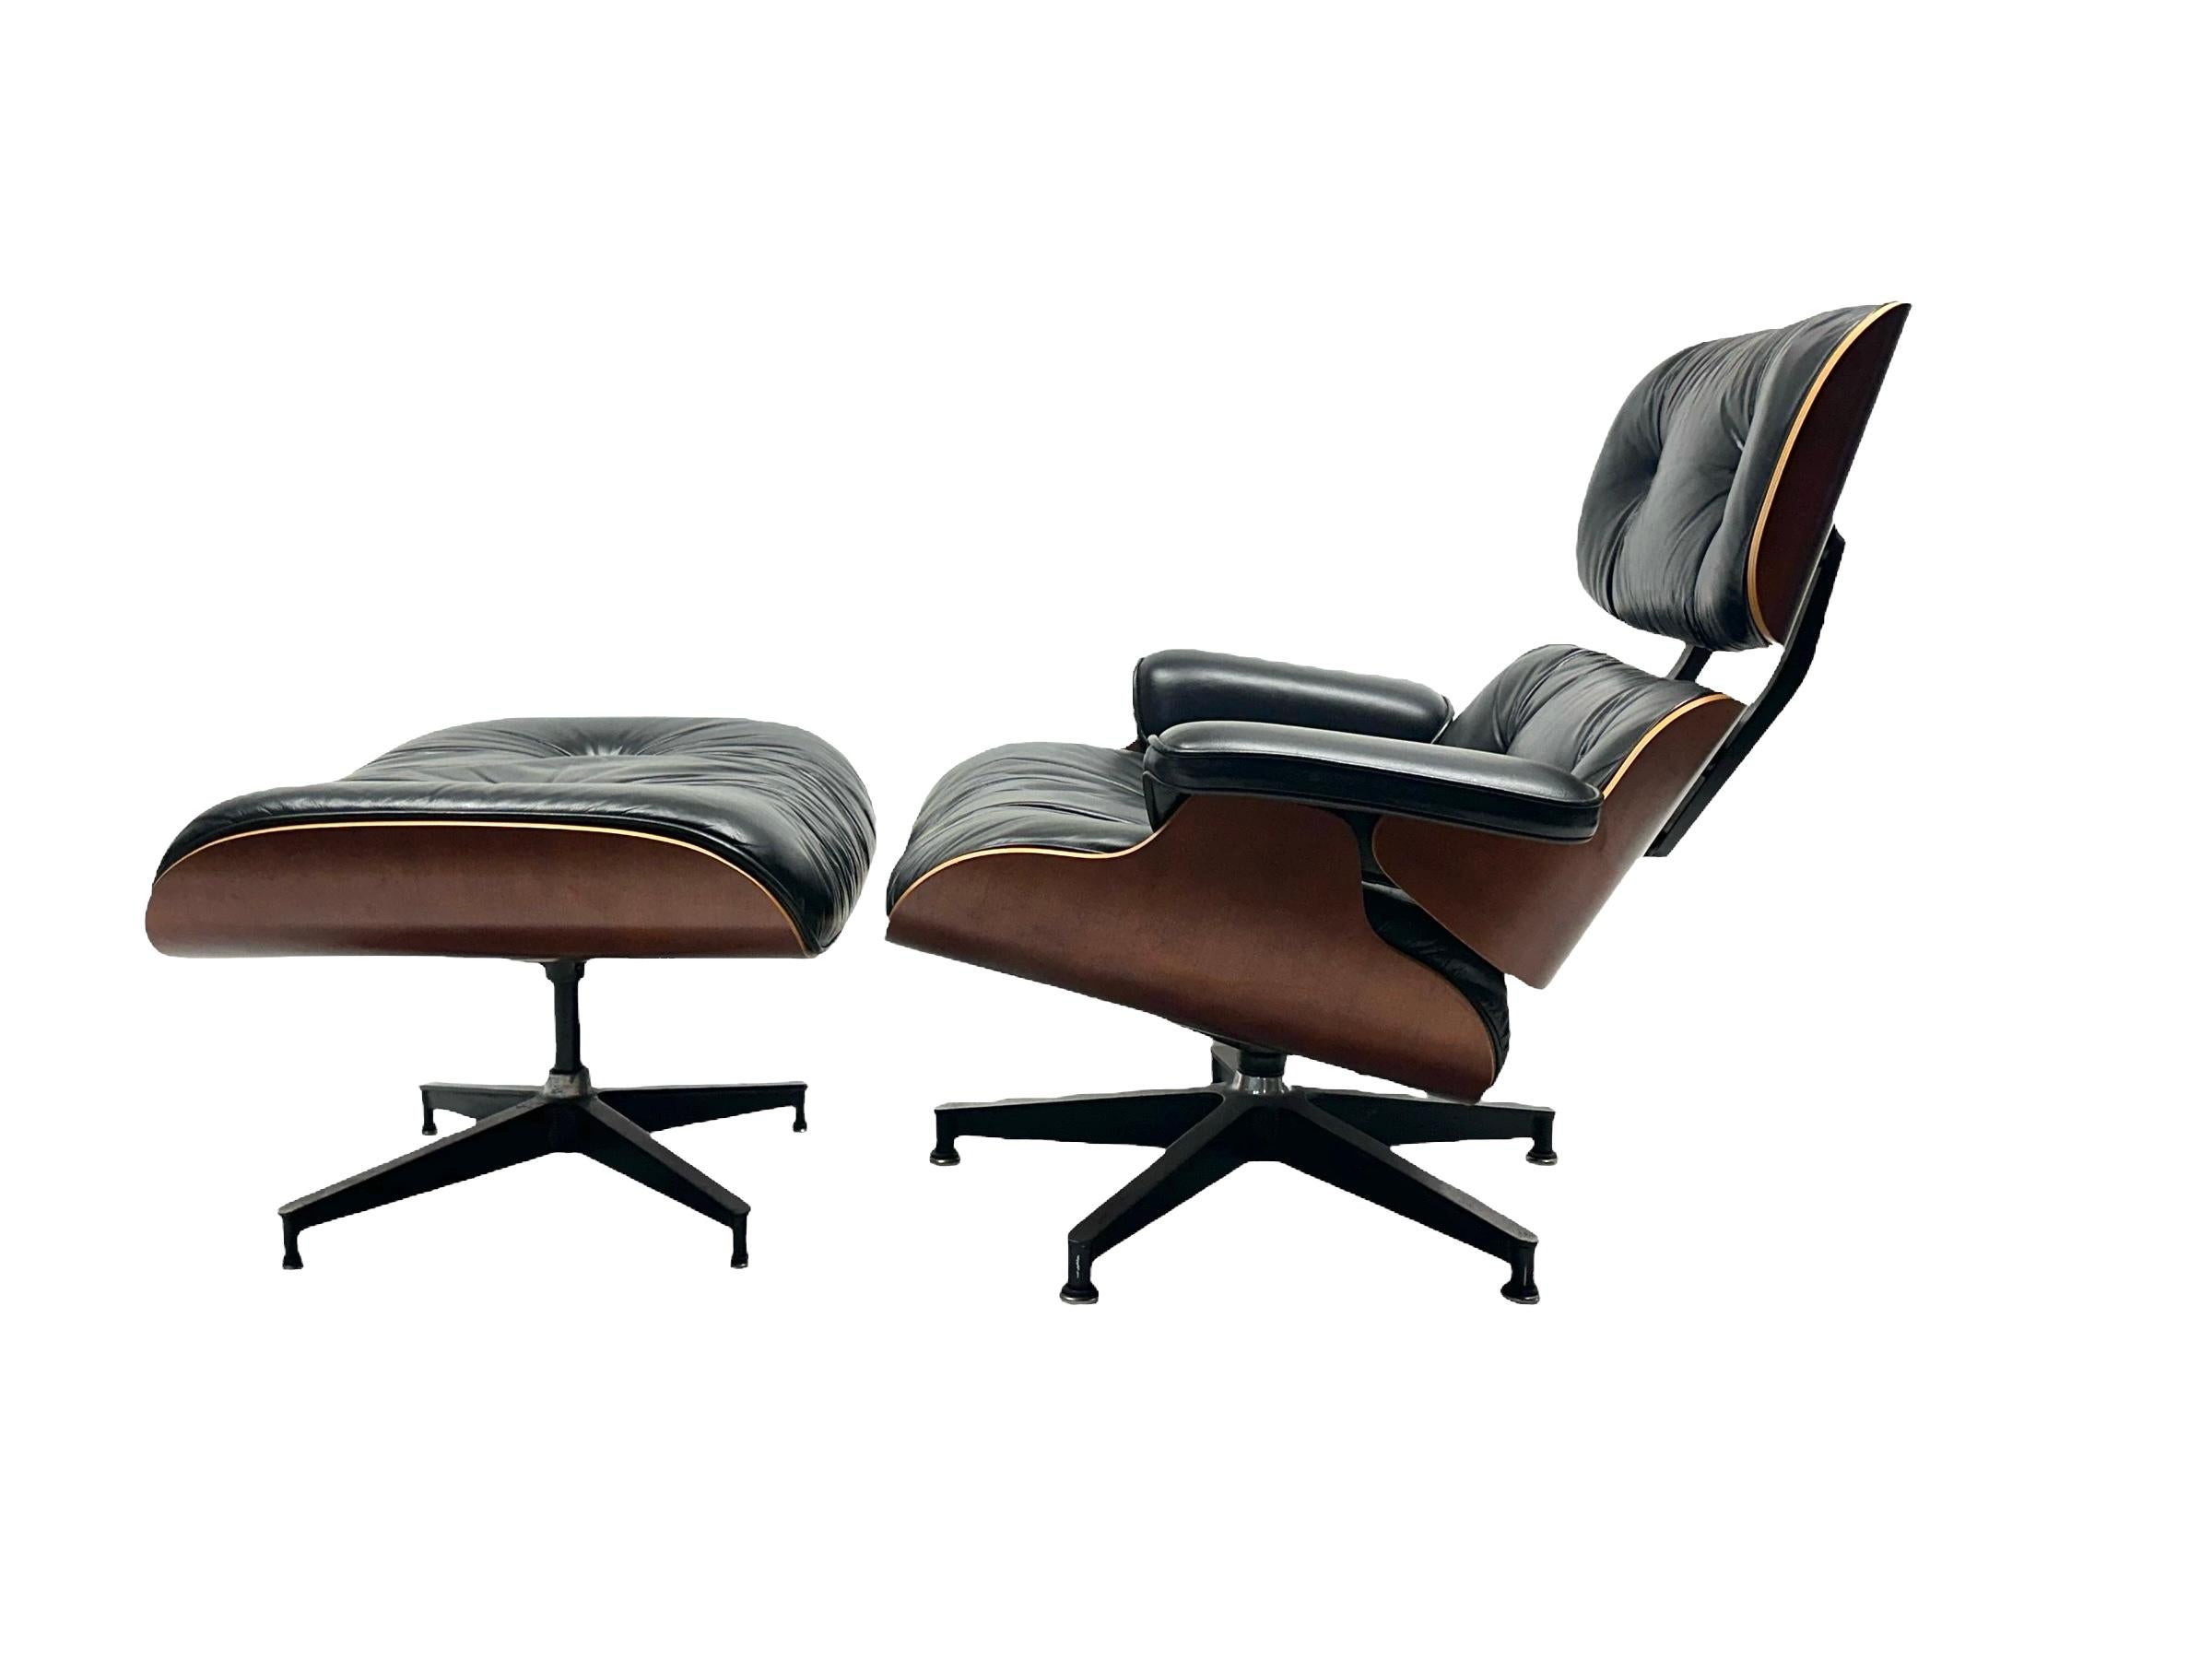 Chaise longue classique Eames et ottoman fabriqués par Herman Miller. Circa 1990 production en élégante finition cerise. Tons de bois chauds et finition uniforme. Ce produit n'a été produit que pendant une courte période et il est de plus en plus